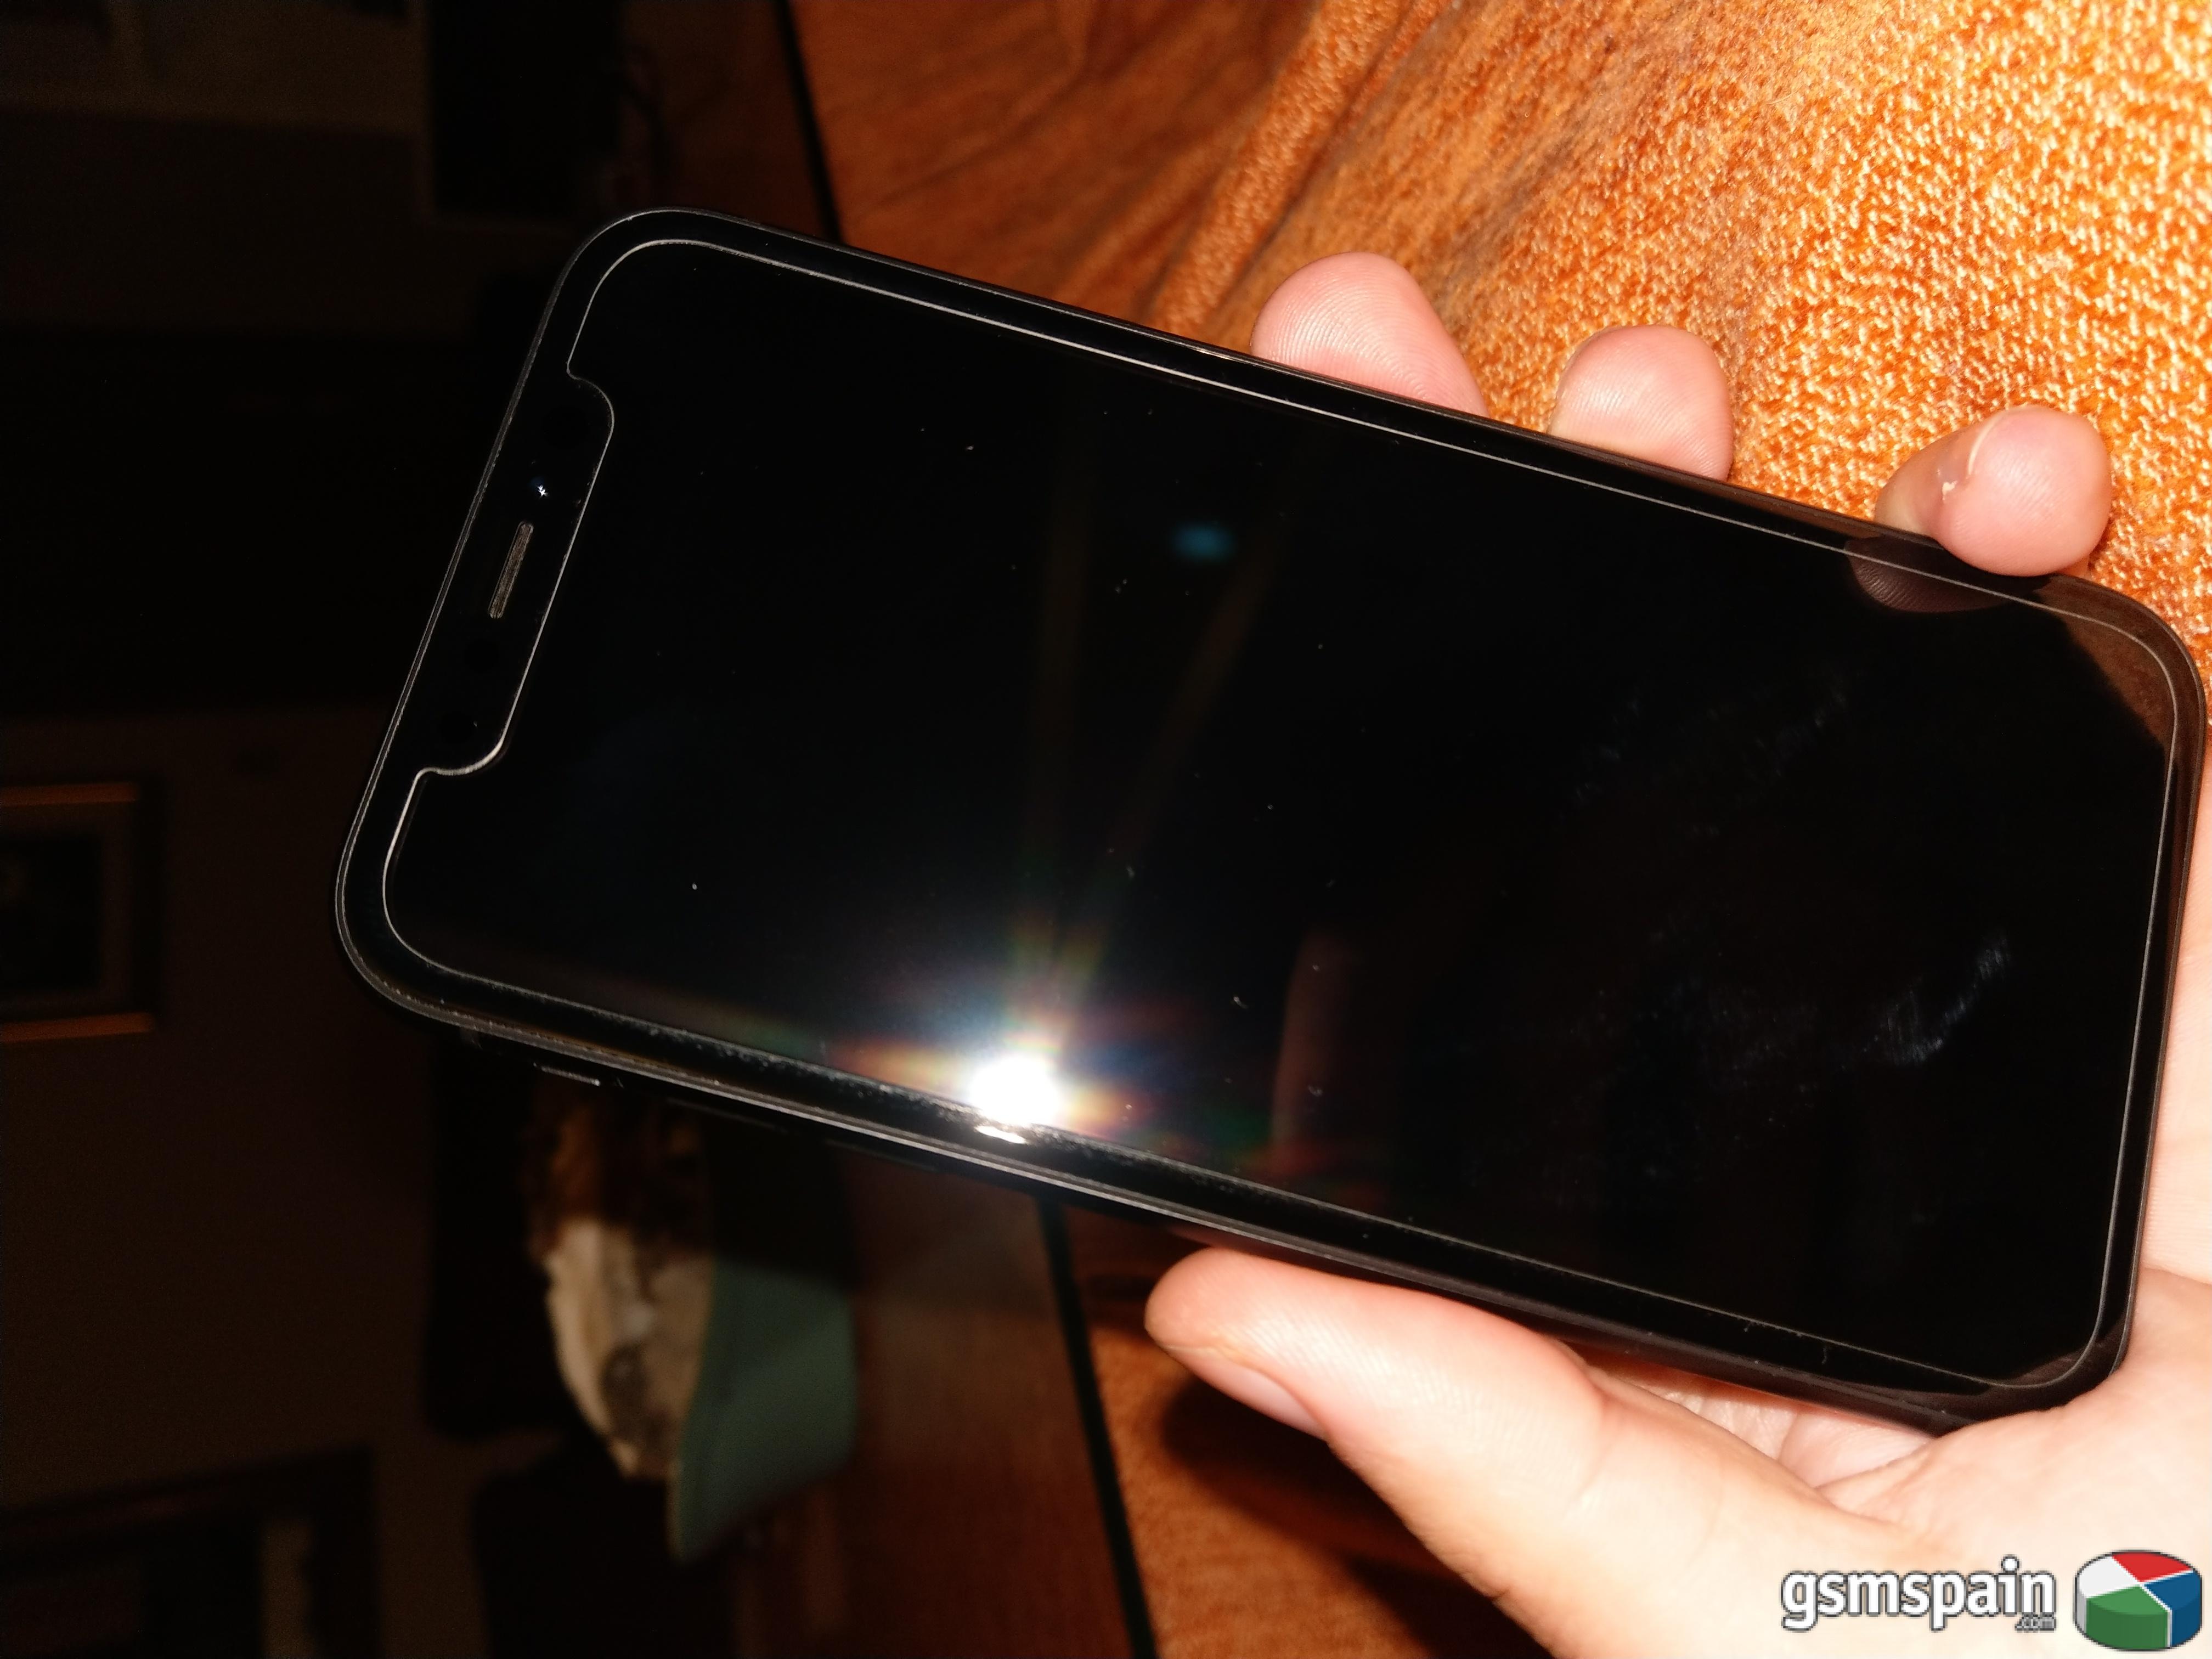 [VENDO] Iphone Xr 64gb Black (650) Tratos en mano en Sevilla.